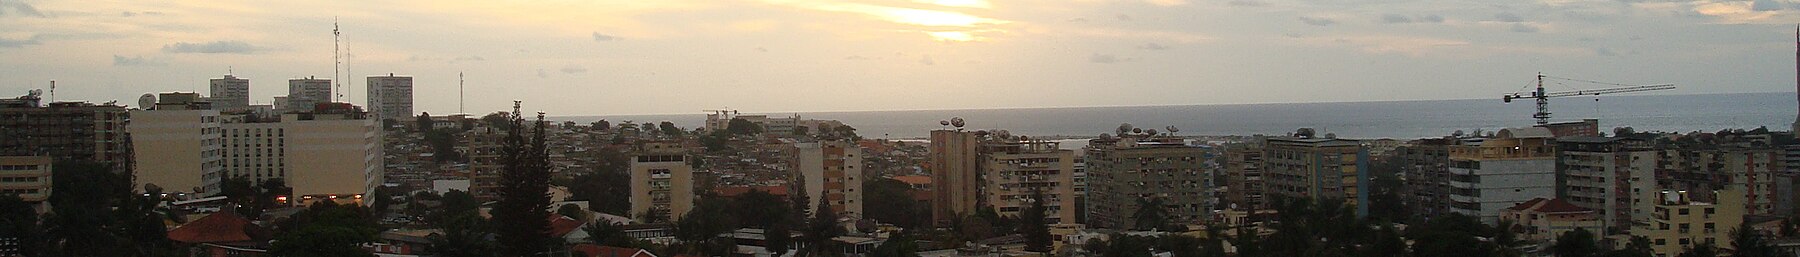 Luanda banner Sunset.jpg